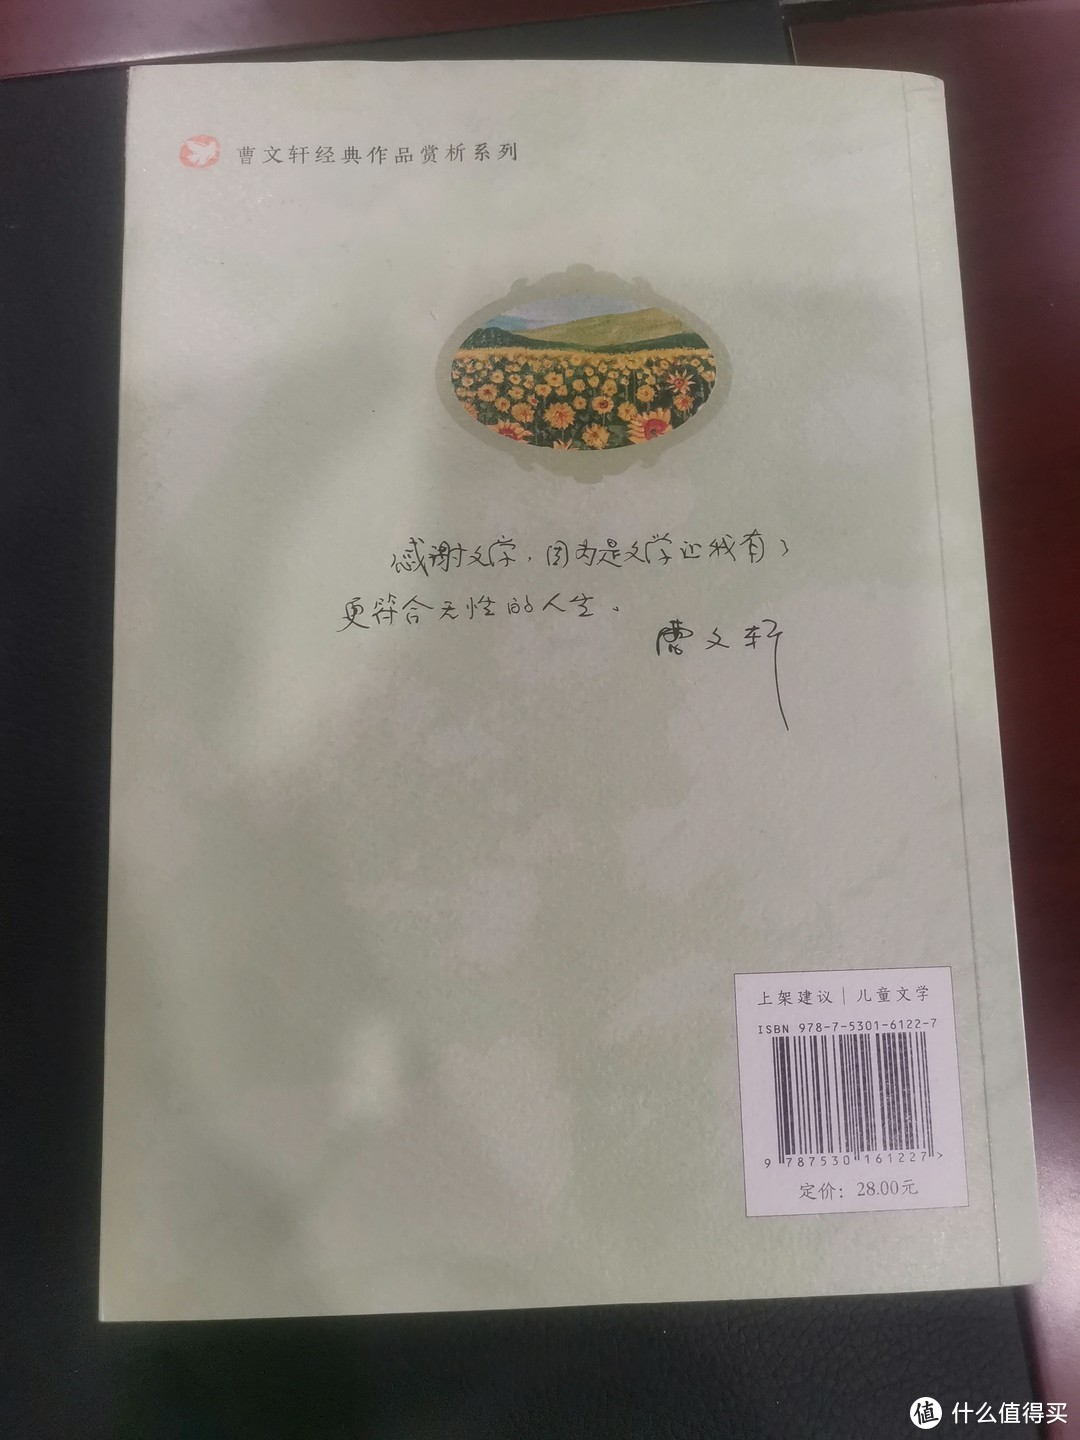 《青铜葵花》是曹文轩的一部非常经典的儿童文学作品